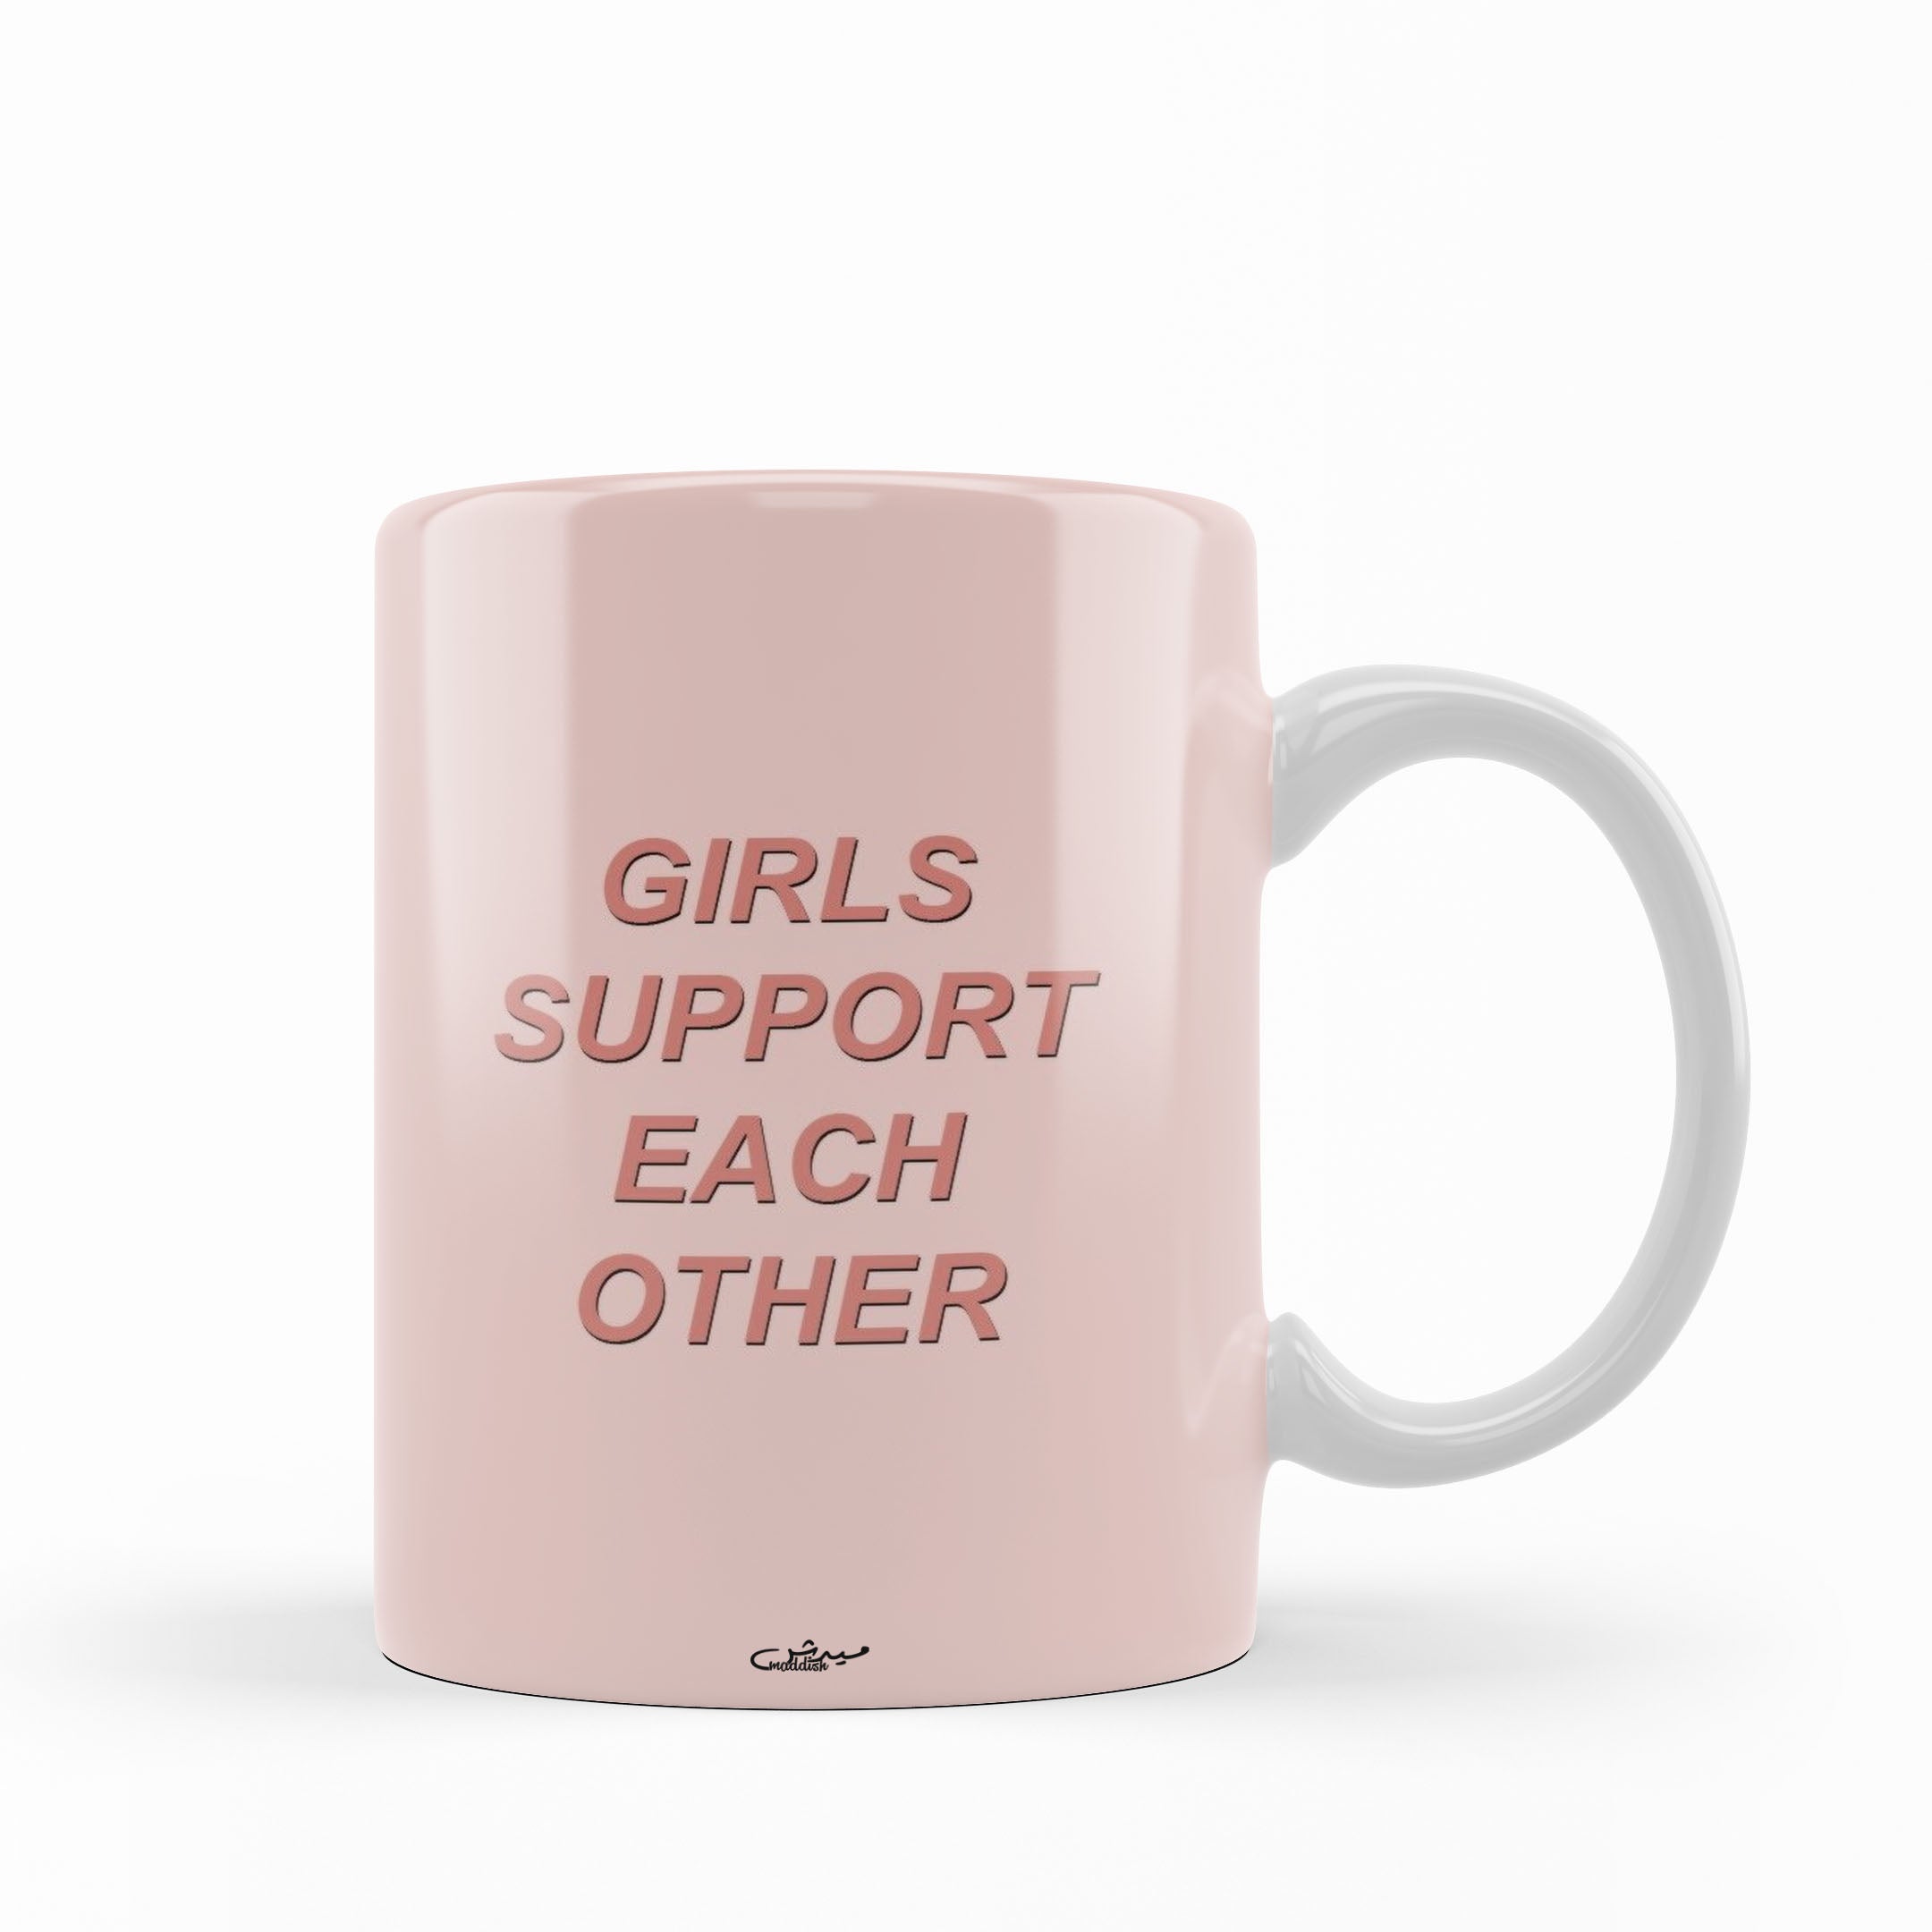 Women's Day Mugs